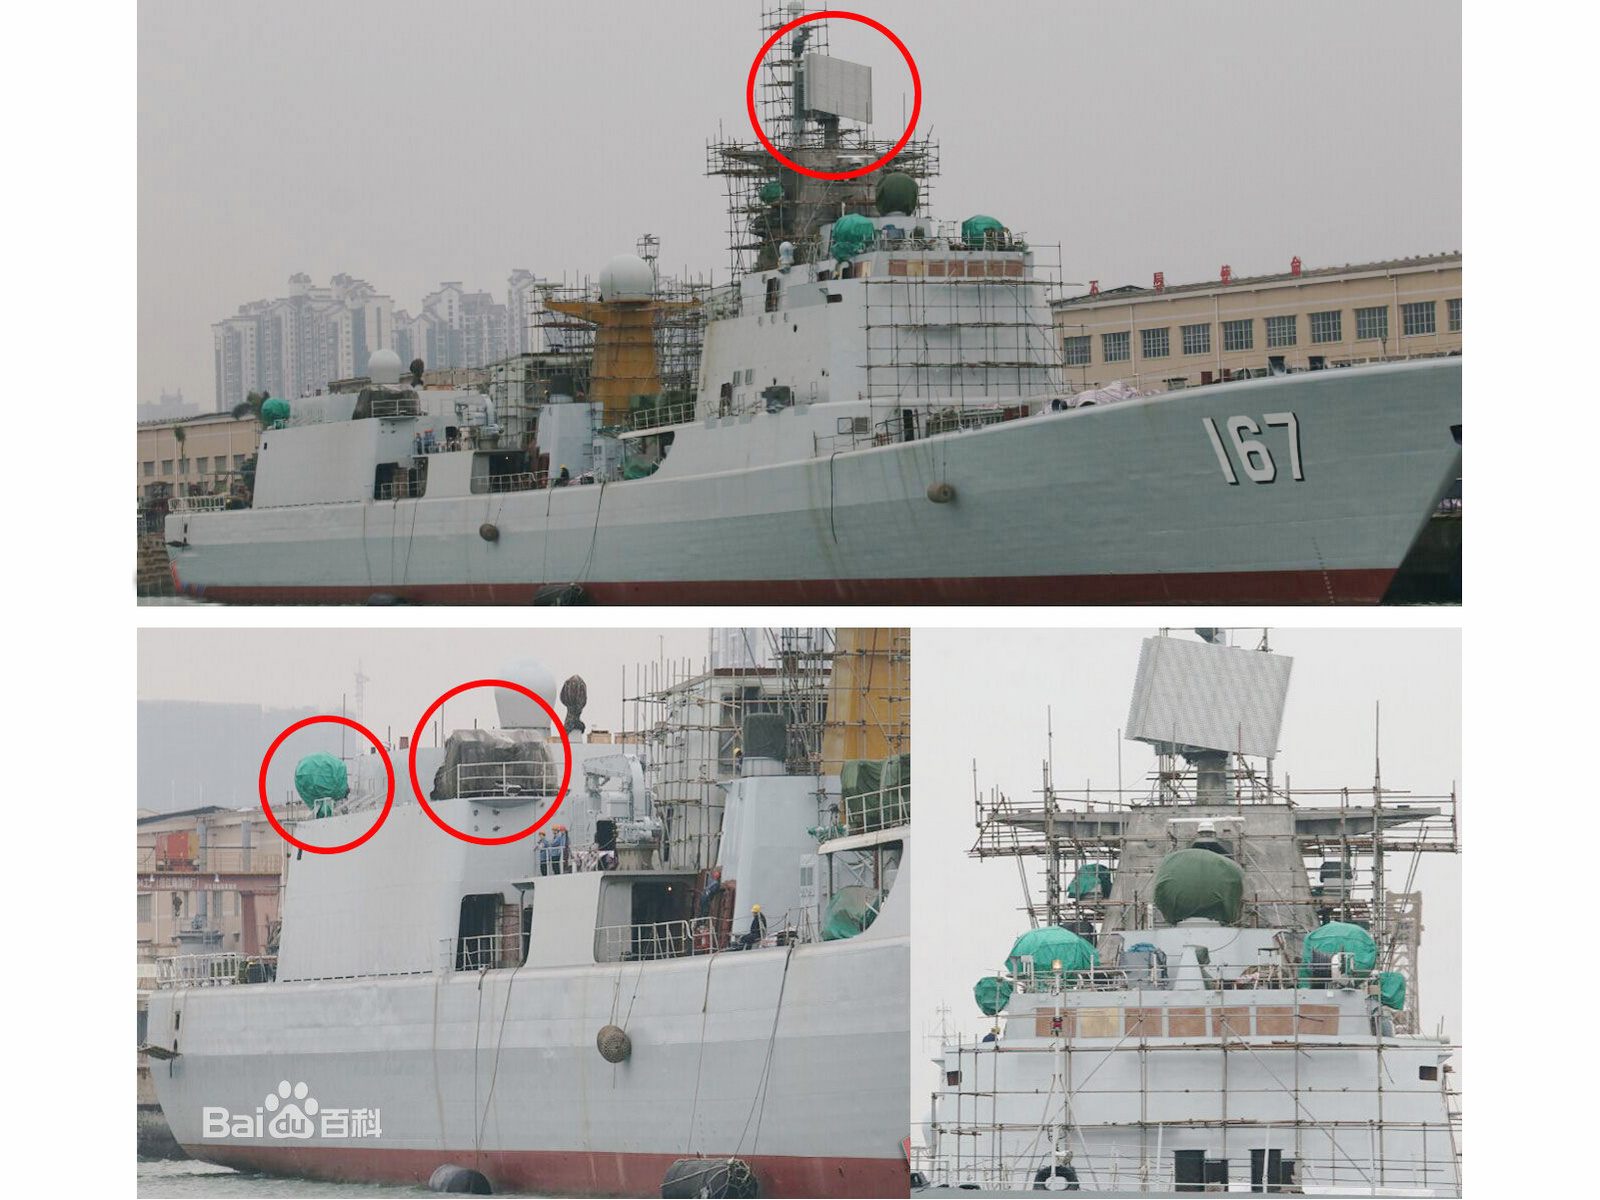 深圳號驅逐艦改裝雷達火炮